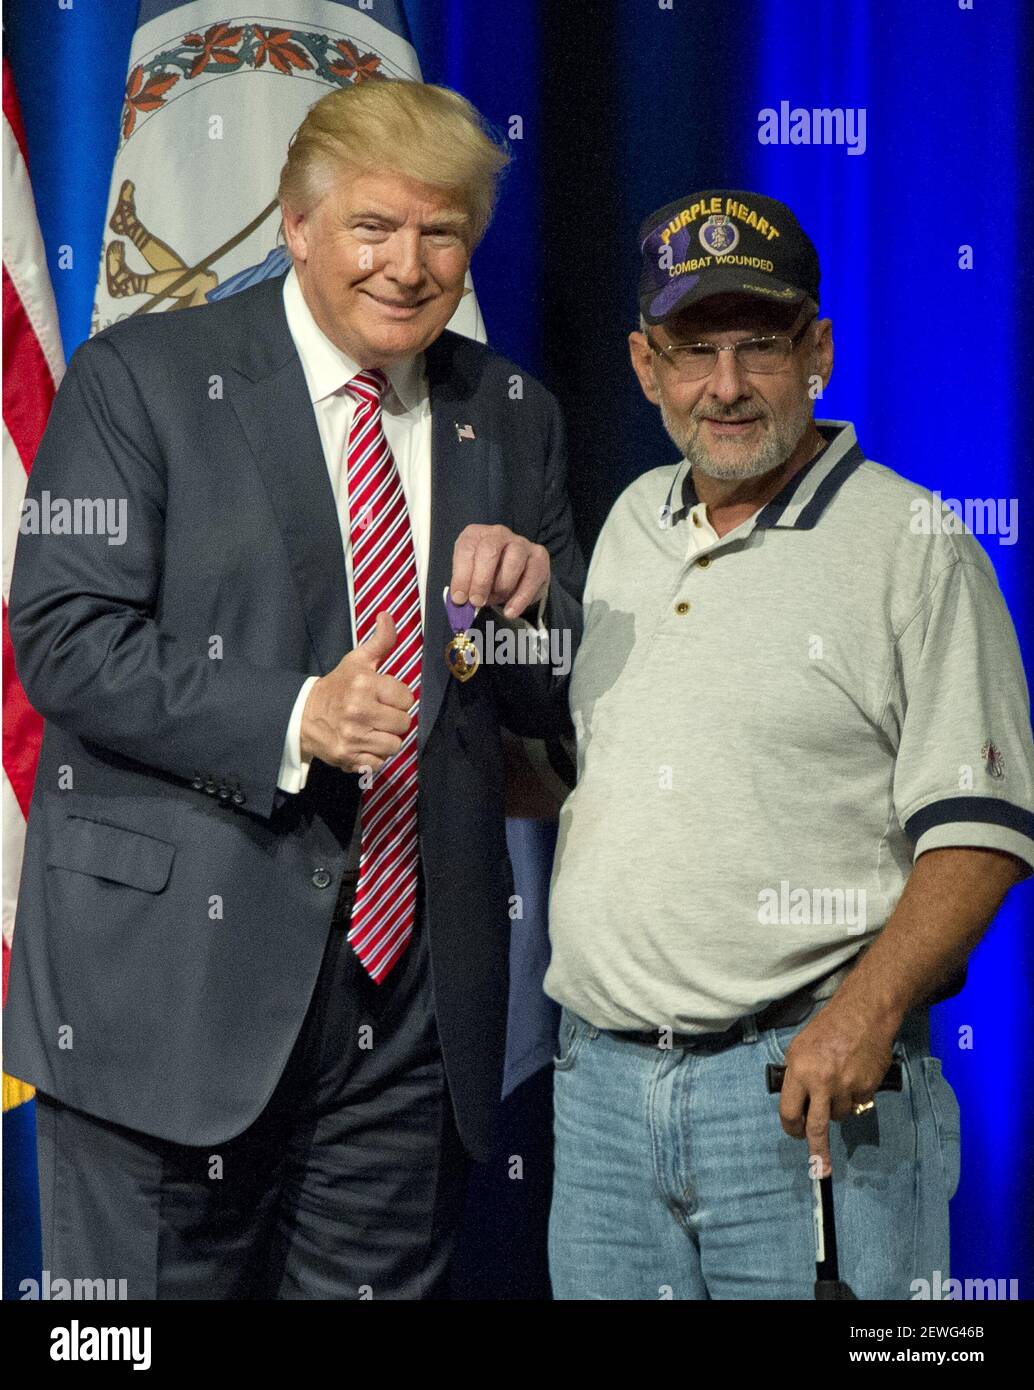 Donald J. Trump, el candidato republicano a presidente de los Estados  Unidos, muestra un corazón púrpura que le dio el teniente coronel Louis  Dorfman, derecho, en una presentación de campaña en Briar